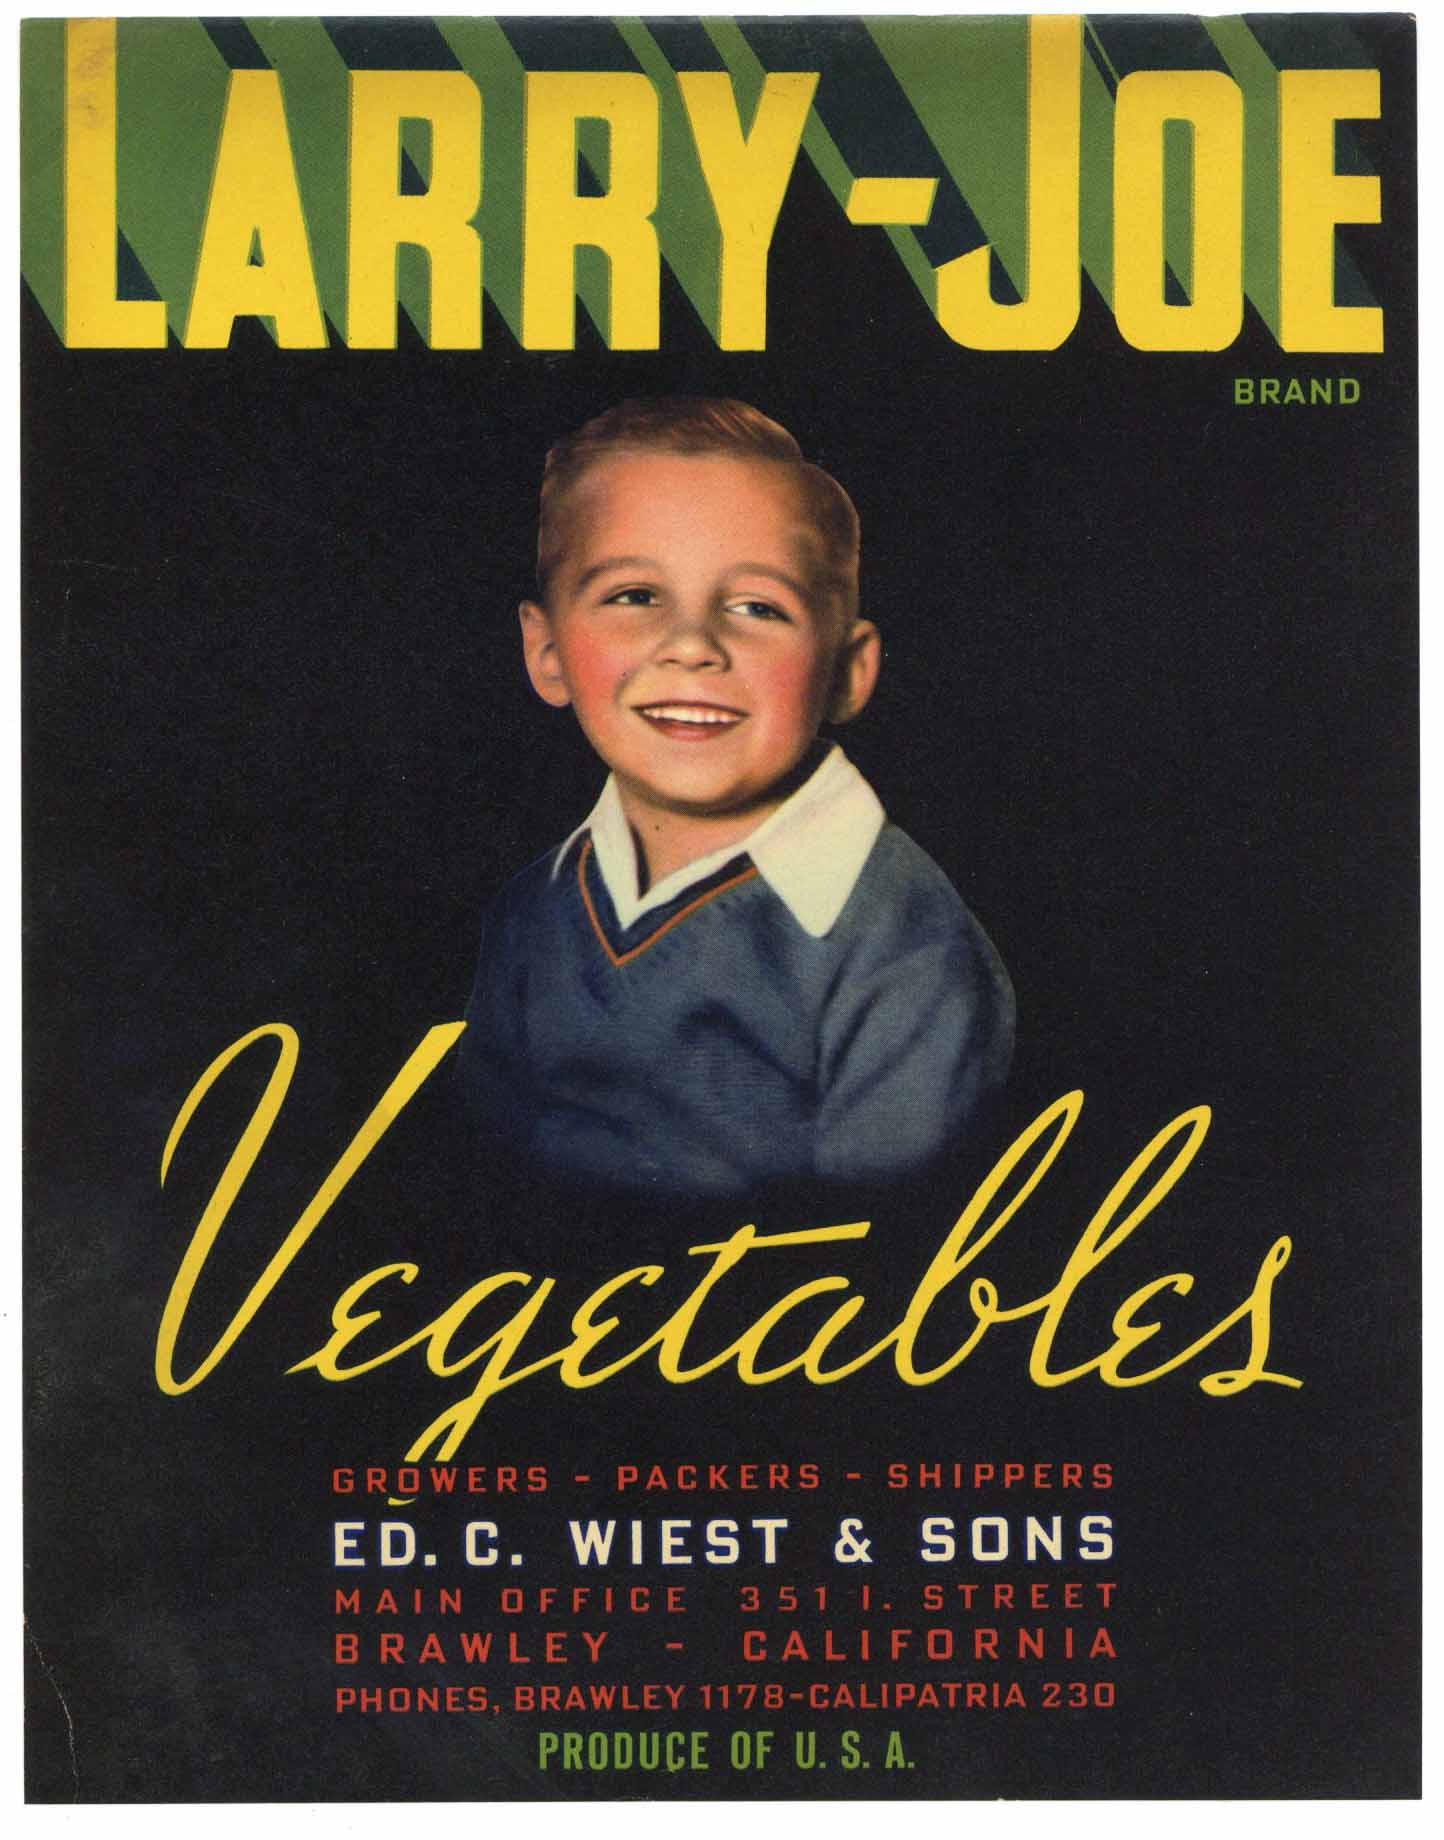 Larry Joe Brand Vintage Brawley Vegetable Crate Label